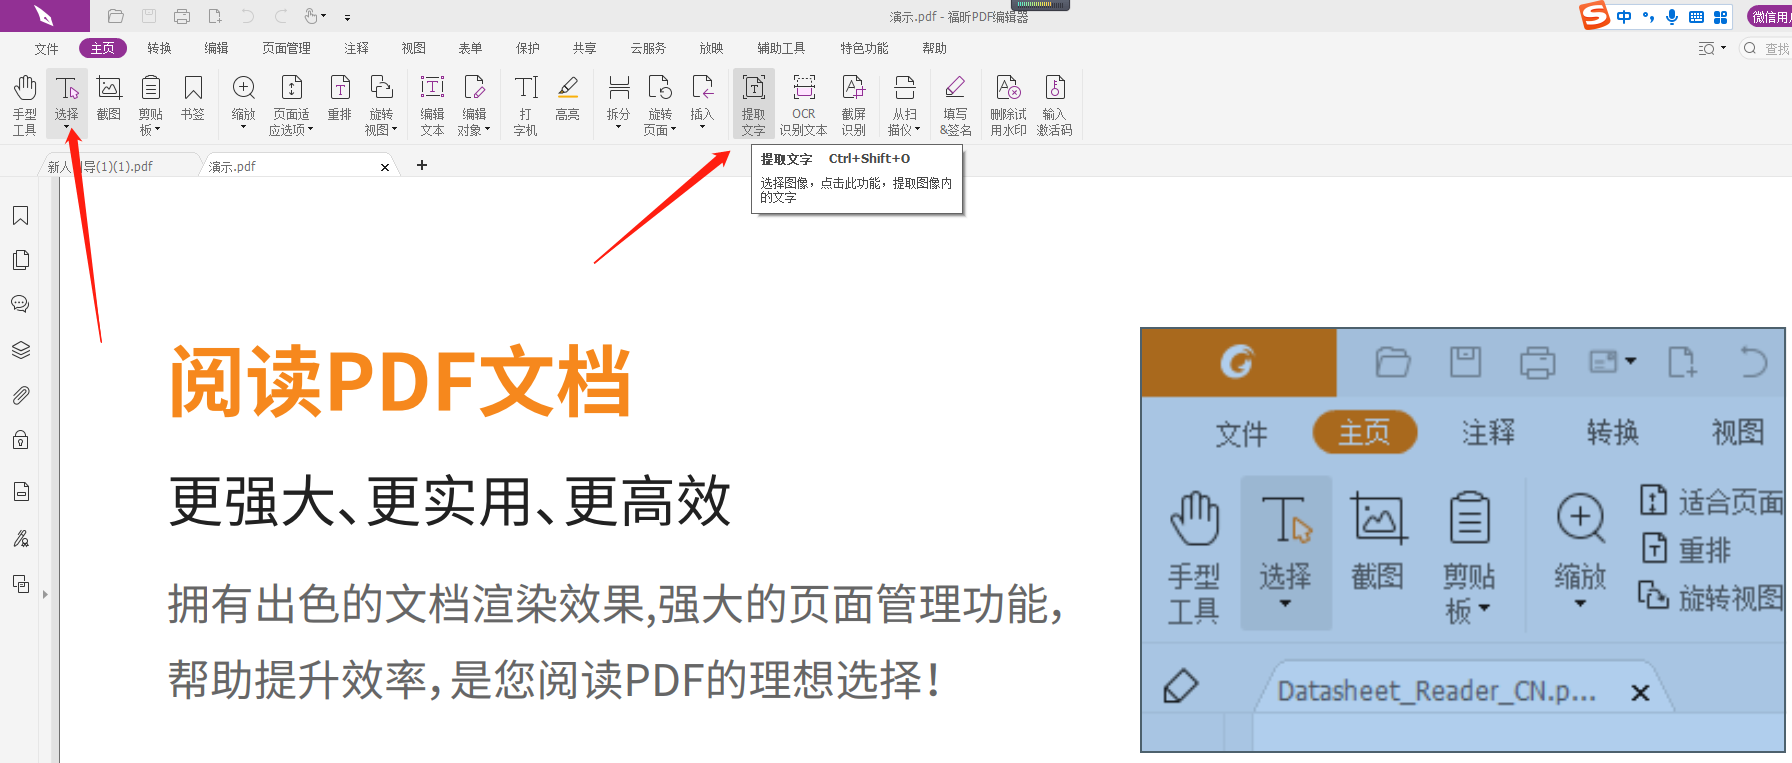 如何提取PDF图片文字